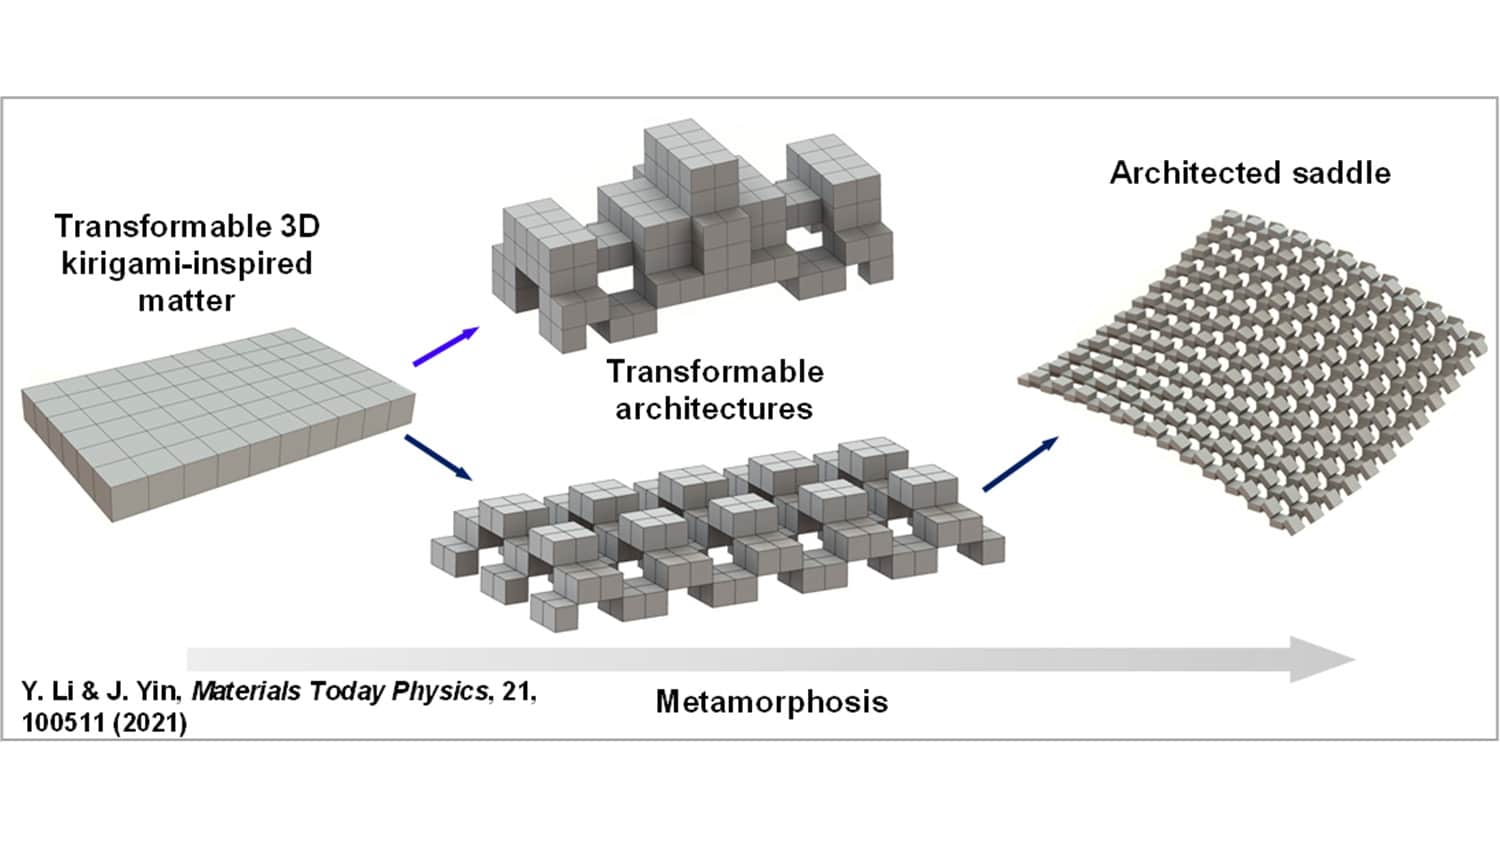 图片展示了四种不同的结构:一个由许多小立方体组成的矩形，可以变成两种不同的复杂结构，其中一种可以变成一个由角上连接的立方体组成的大结构，它们之间有缝隙。